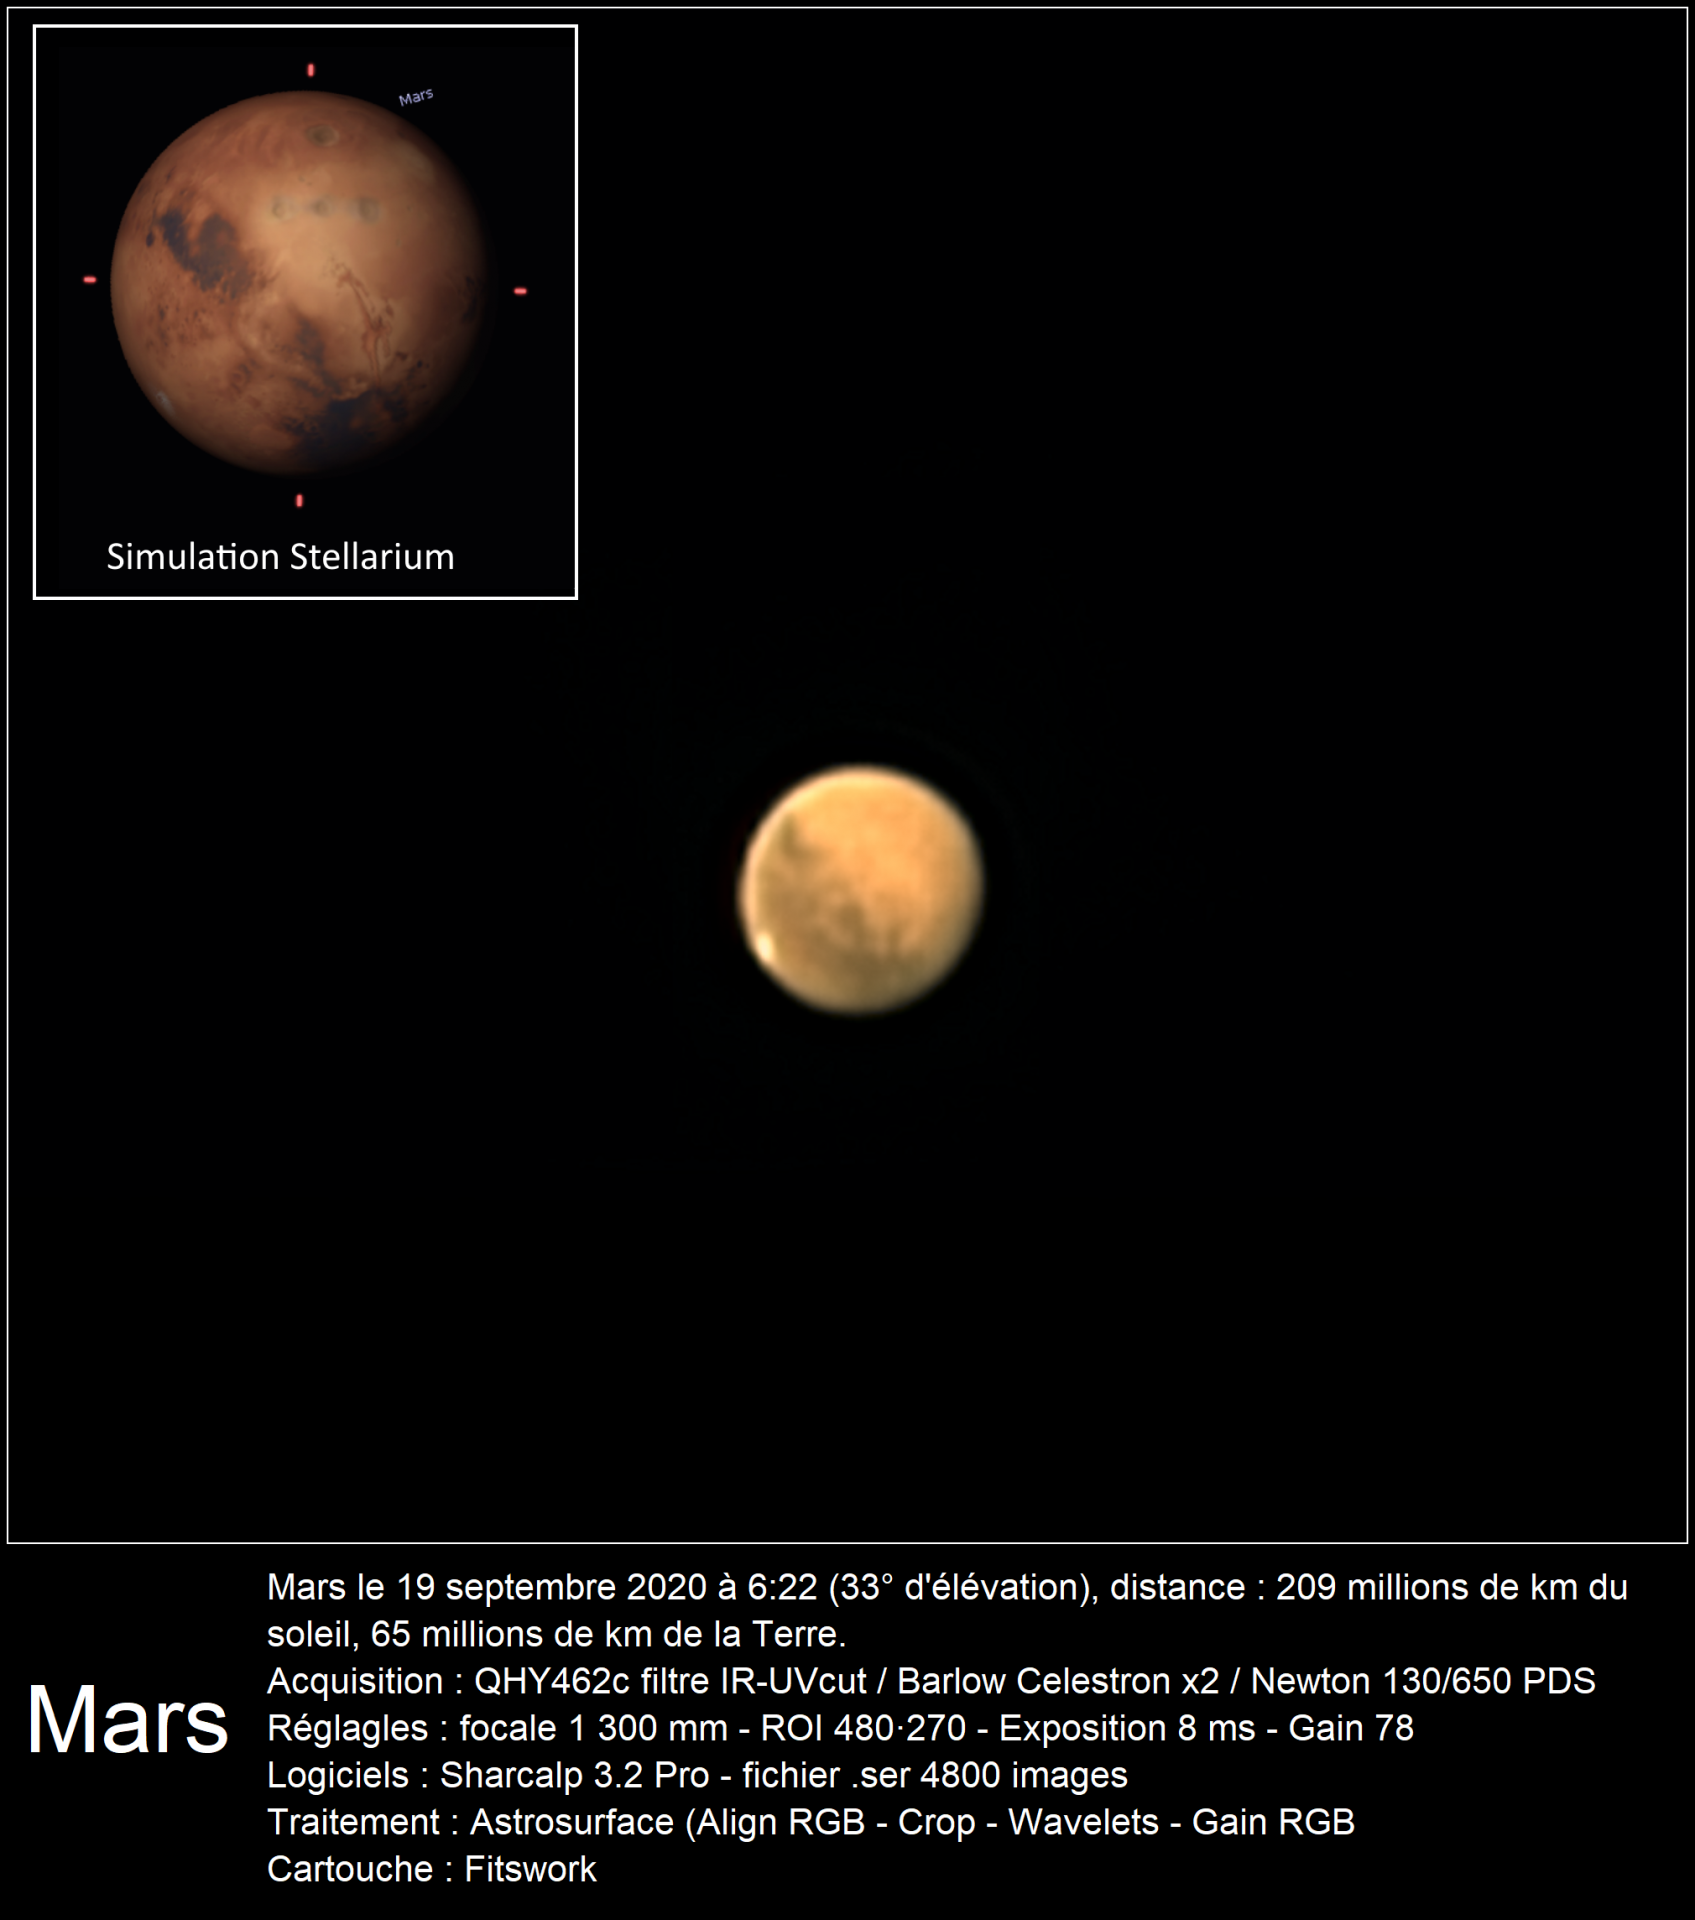 Mars 19 septembre 2020 462c 130pds celestronx2